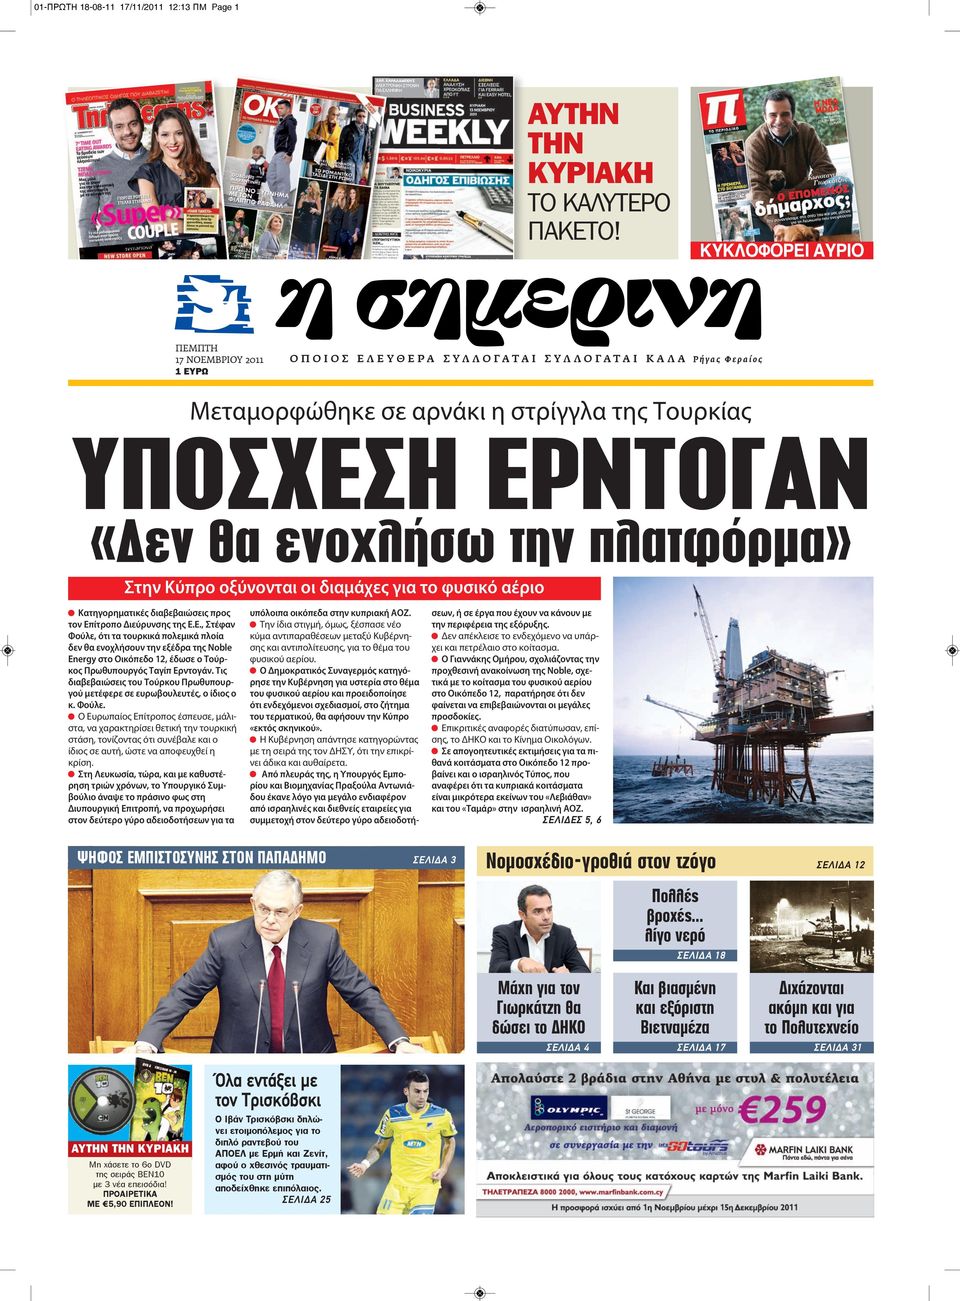 ΥΠΟΣΧΕΣΗ ΕΡΝΤΟΓΑΝ «Δεν θα ενοχλήσω την πλατφόρμα» Στην Κύπρο οξύνονται οι διαμάχες για το φυσικό αέριο Κατηγορηματικές διαβεβαιώσεις προς τον Επίτροπο Διεύρυνσης της Ε.Ε., Στέφαν Φούλε, ότι τα τουρκικά πολεμικά πλοία δεν θα ενοχλήσουν την εξέδρα της Noble Energy στο Οικόπεδο 12, έδωσε ο Τούρκος Πρωθυπουργός Ταγίπ Ερντογάν.